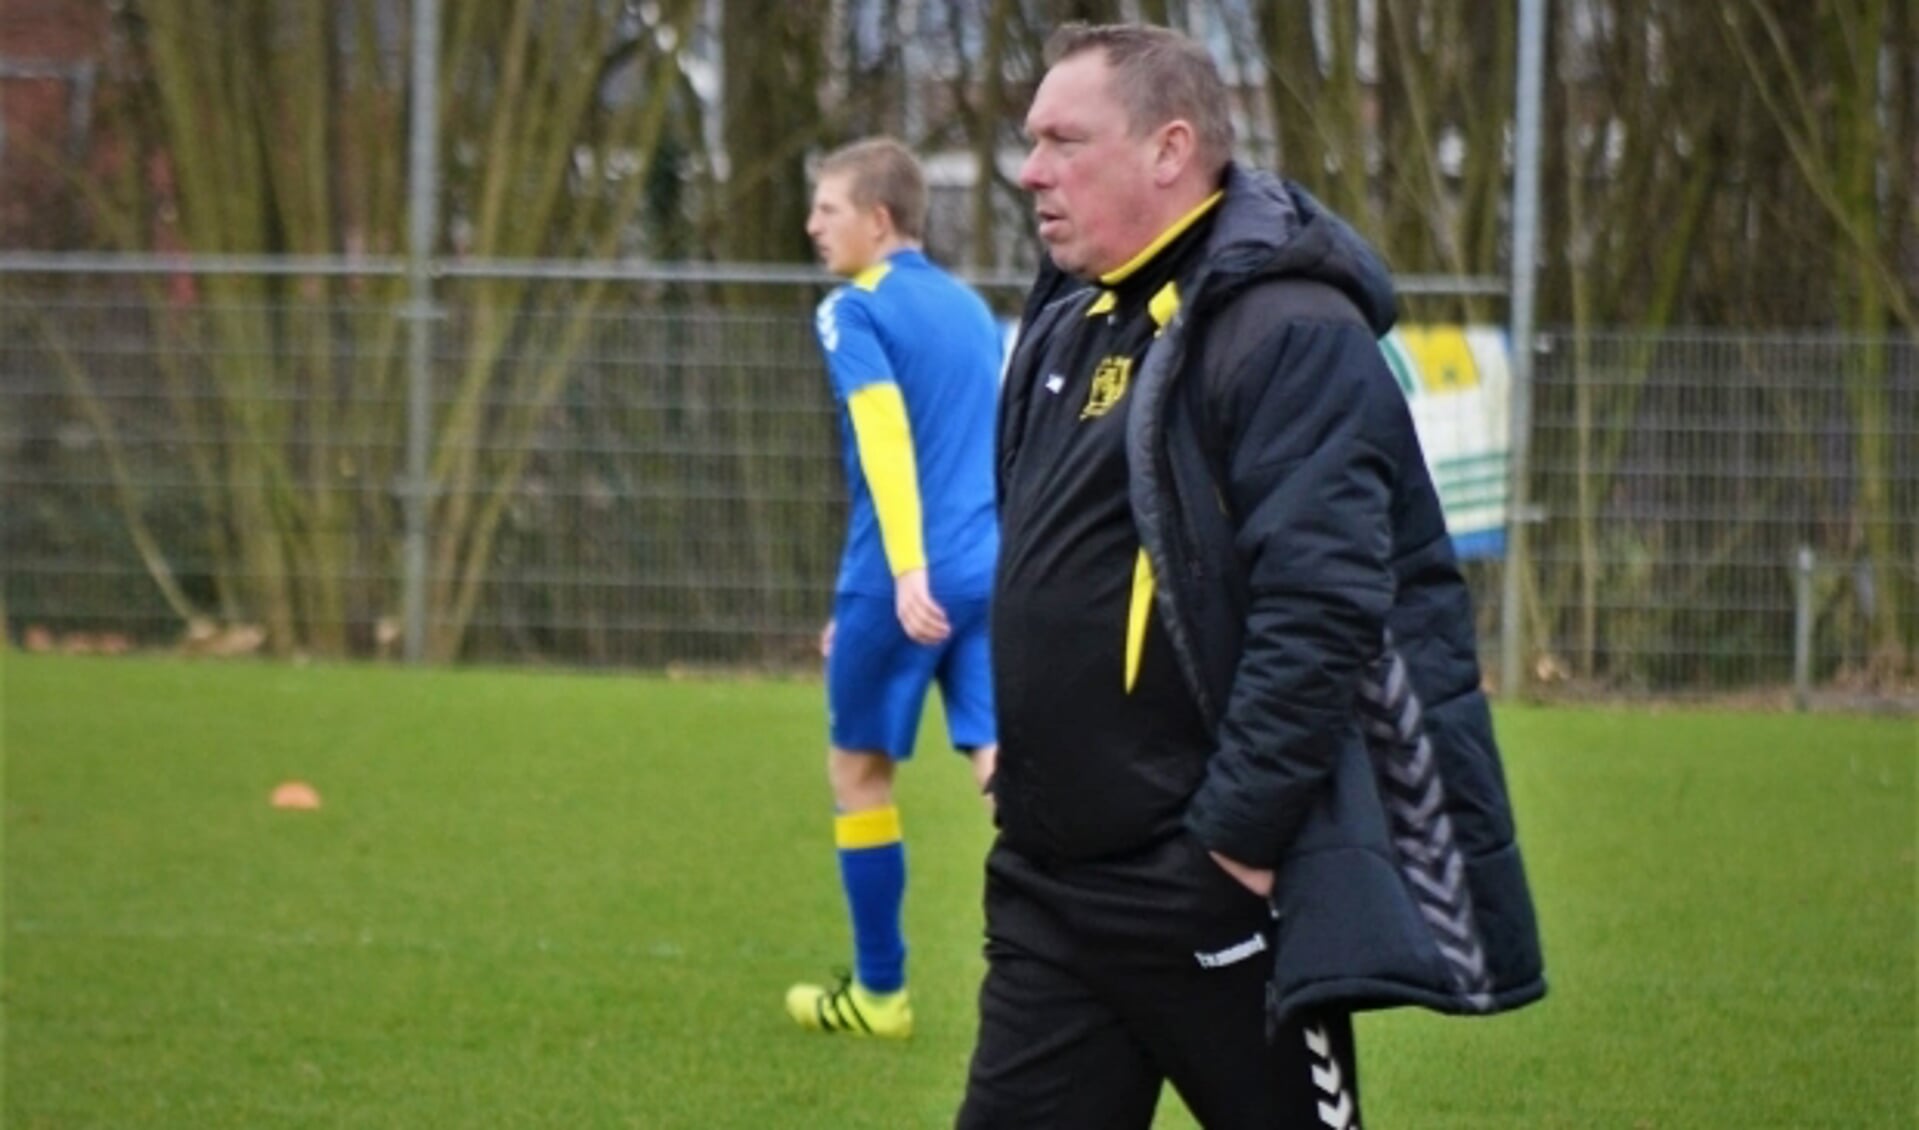 De nieuwe trainer van SV Buren, Marcel Nijhuis, kijkt geconcentreerd naar zijn spelers tijdens een training. (Foto: archief M. Nijhuis) 